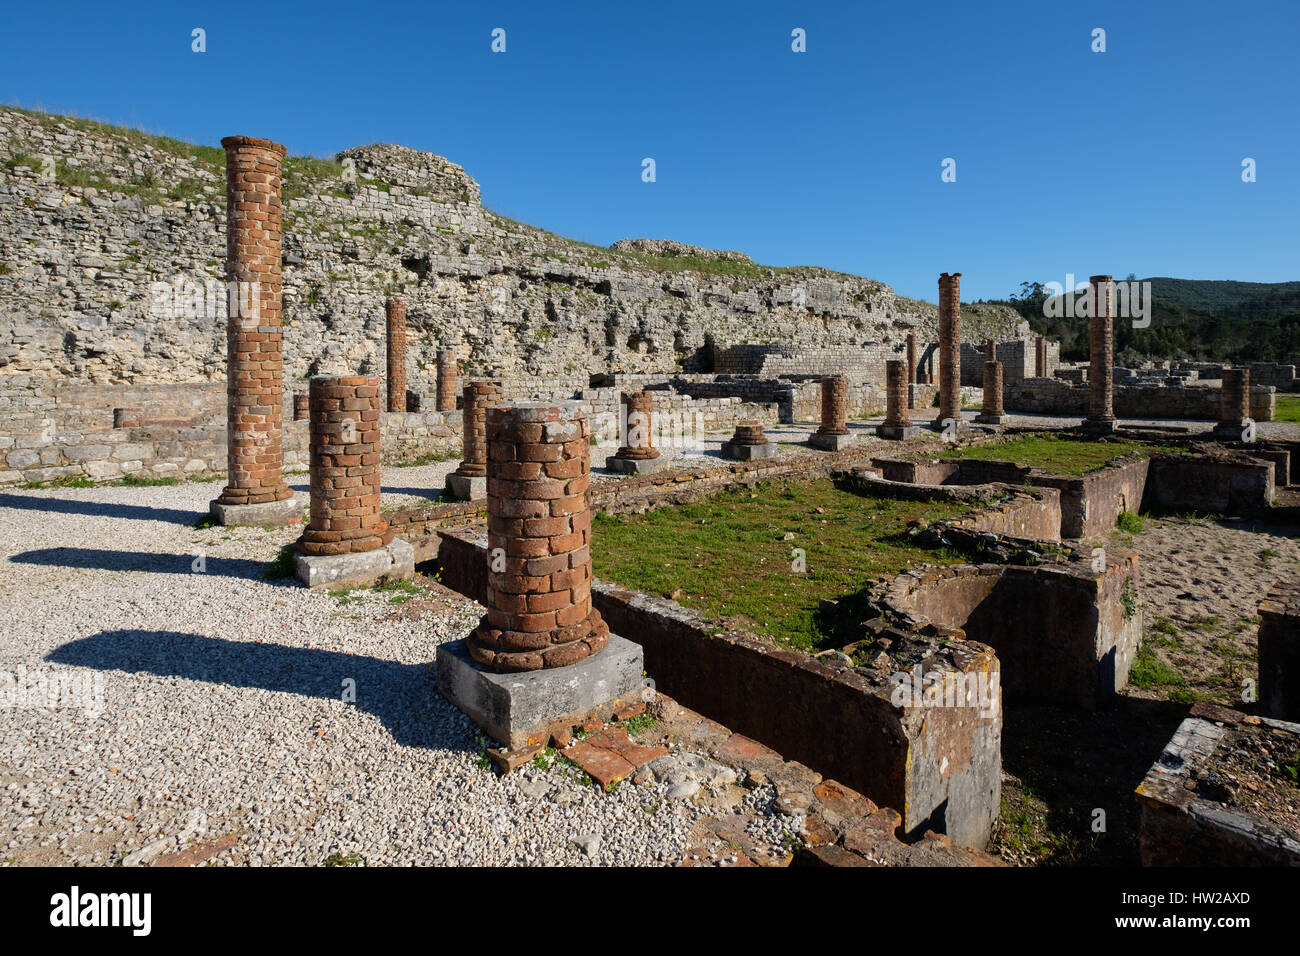 Peristilo en el asentamiento romano ruinas de Conimbriga, Portugal, Europa Foto de stock